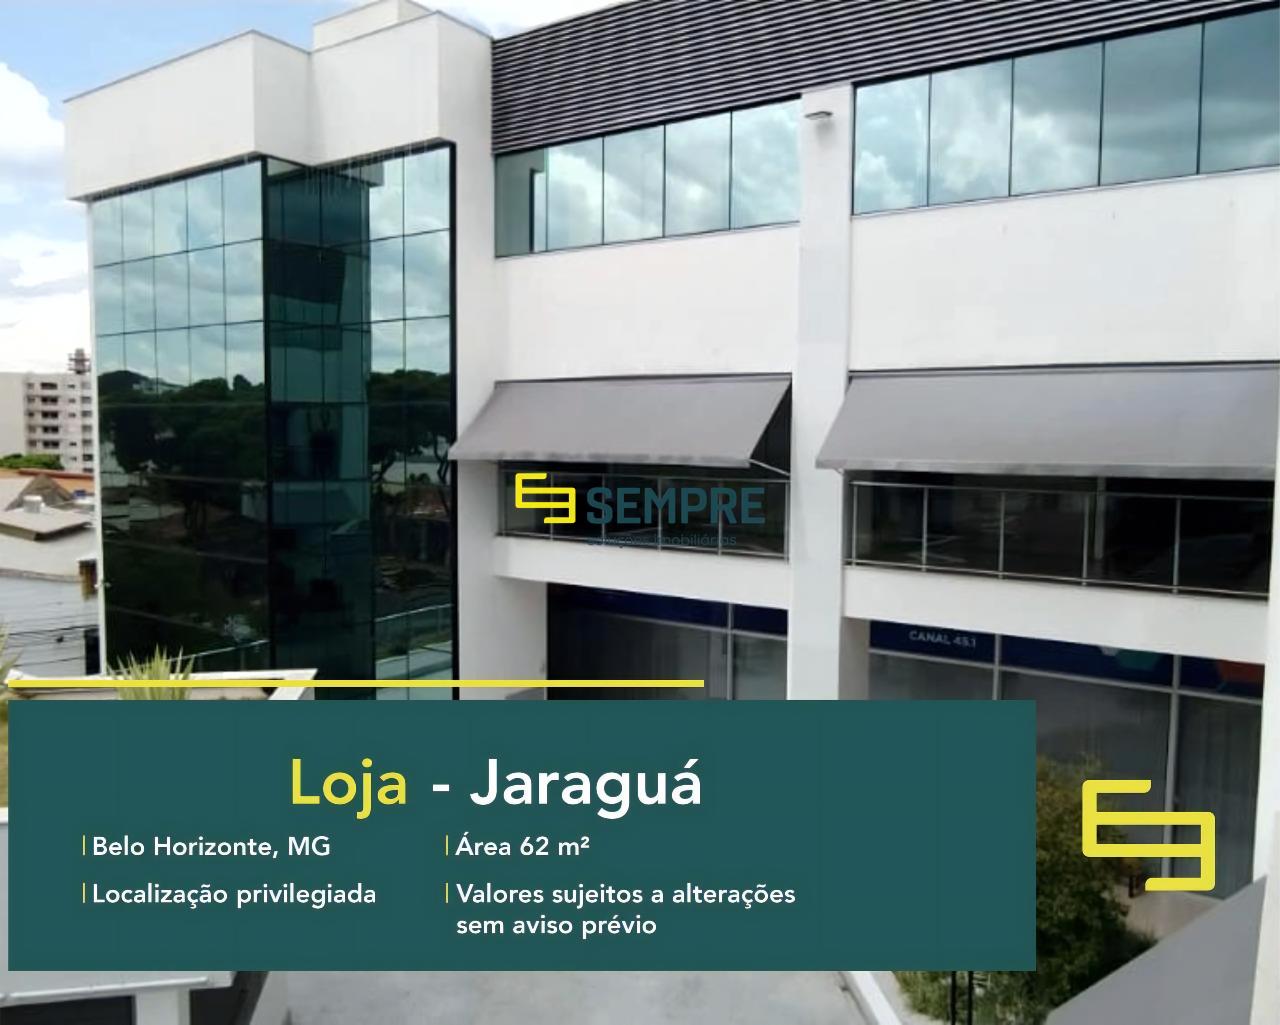 Loja para locação no bairro Jaraguá em BH, excelente localização. O estabelecimento comercial conta com área de 62 m².